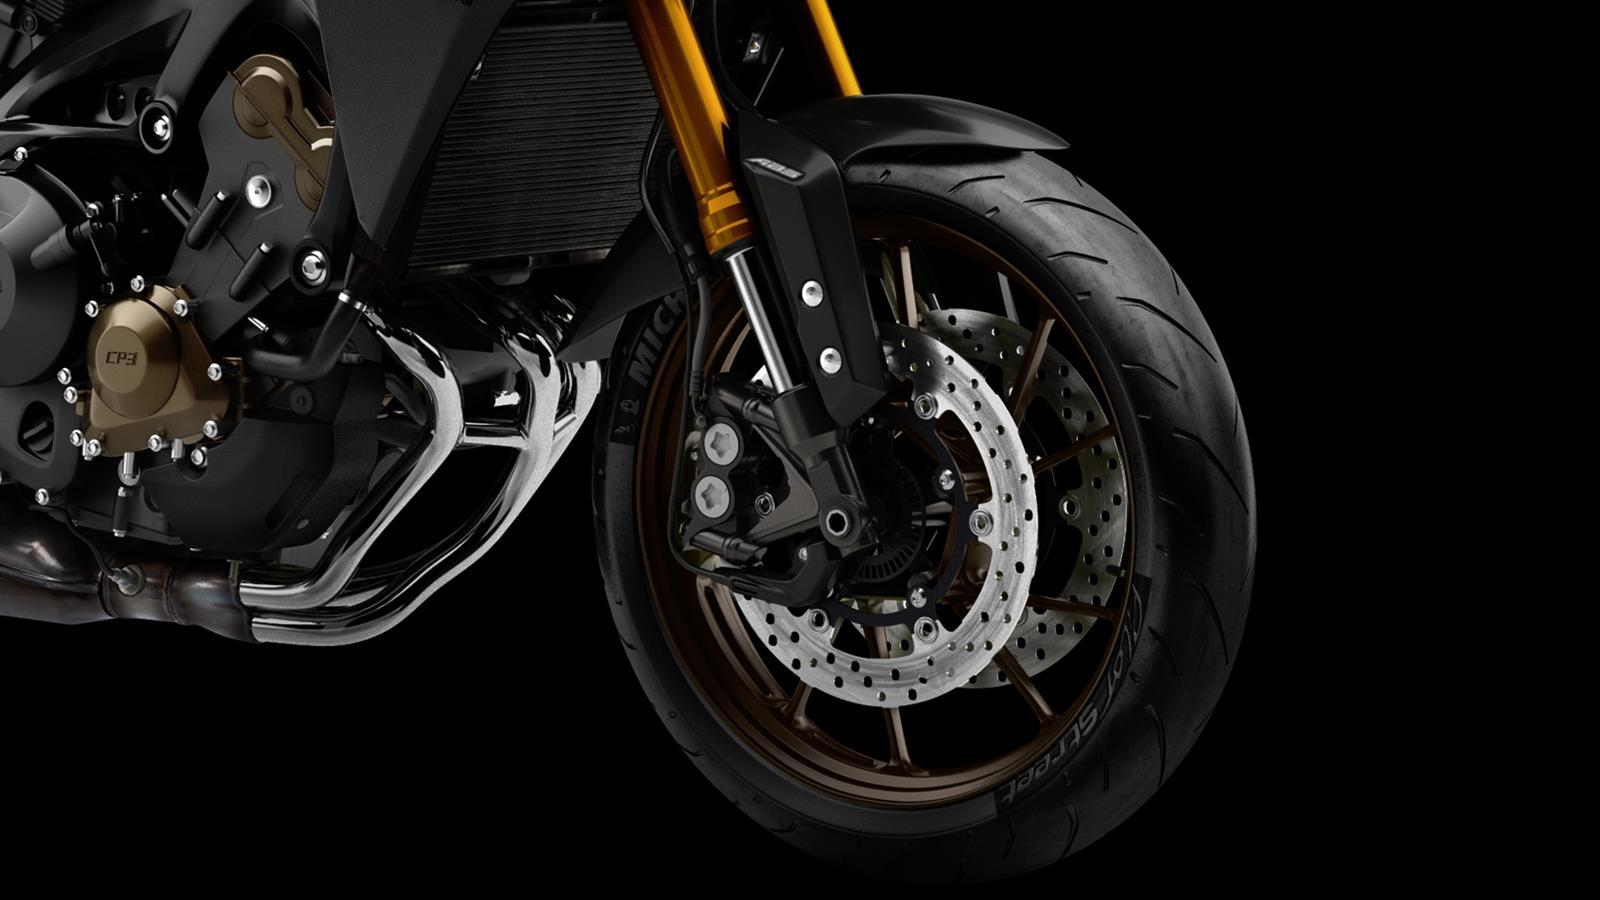 Vymodelování nádrže s úzkou střední částí a prohlubněmi pro kolena zvyšuje jízdní komfort a podtrhuje moderní a agresivní vzhled tohoto stylového a výkonného motocyklu.